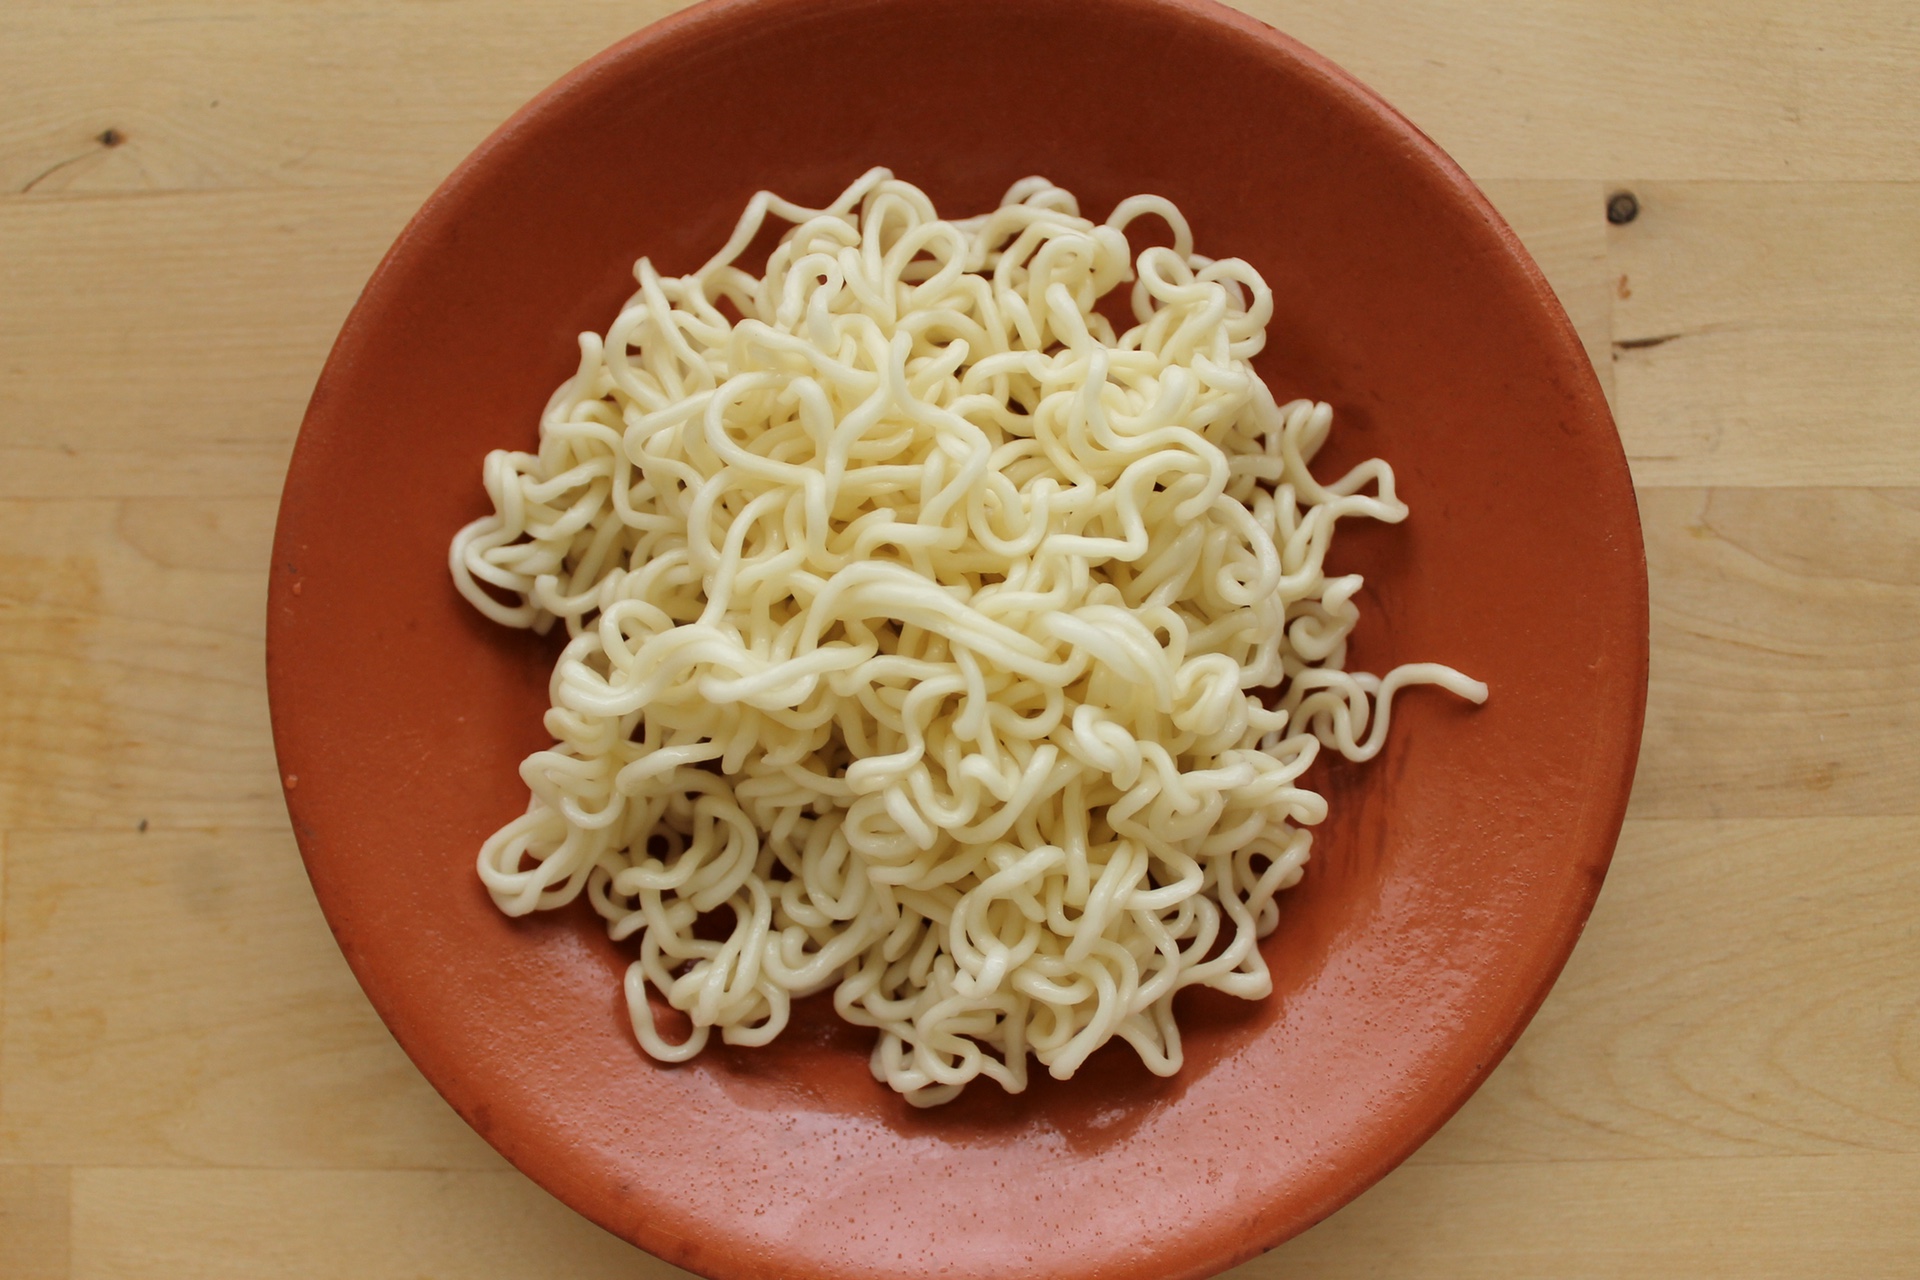 If you’re going to buy dehydrated, pre-packaged ramen, buy Shirakiku’s noodles.